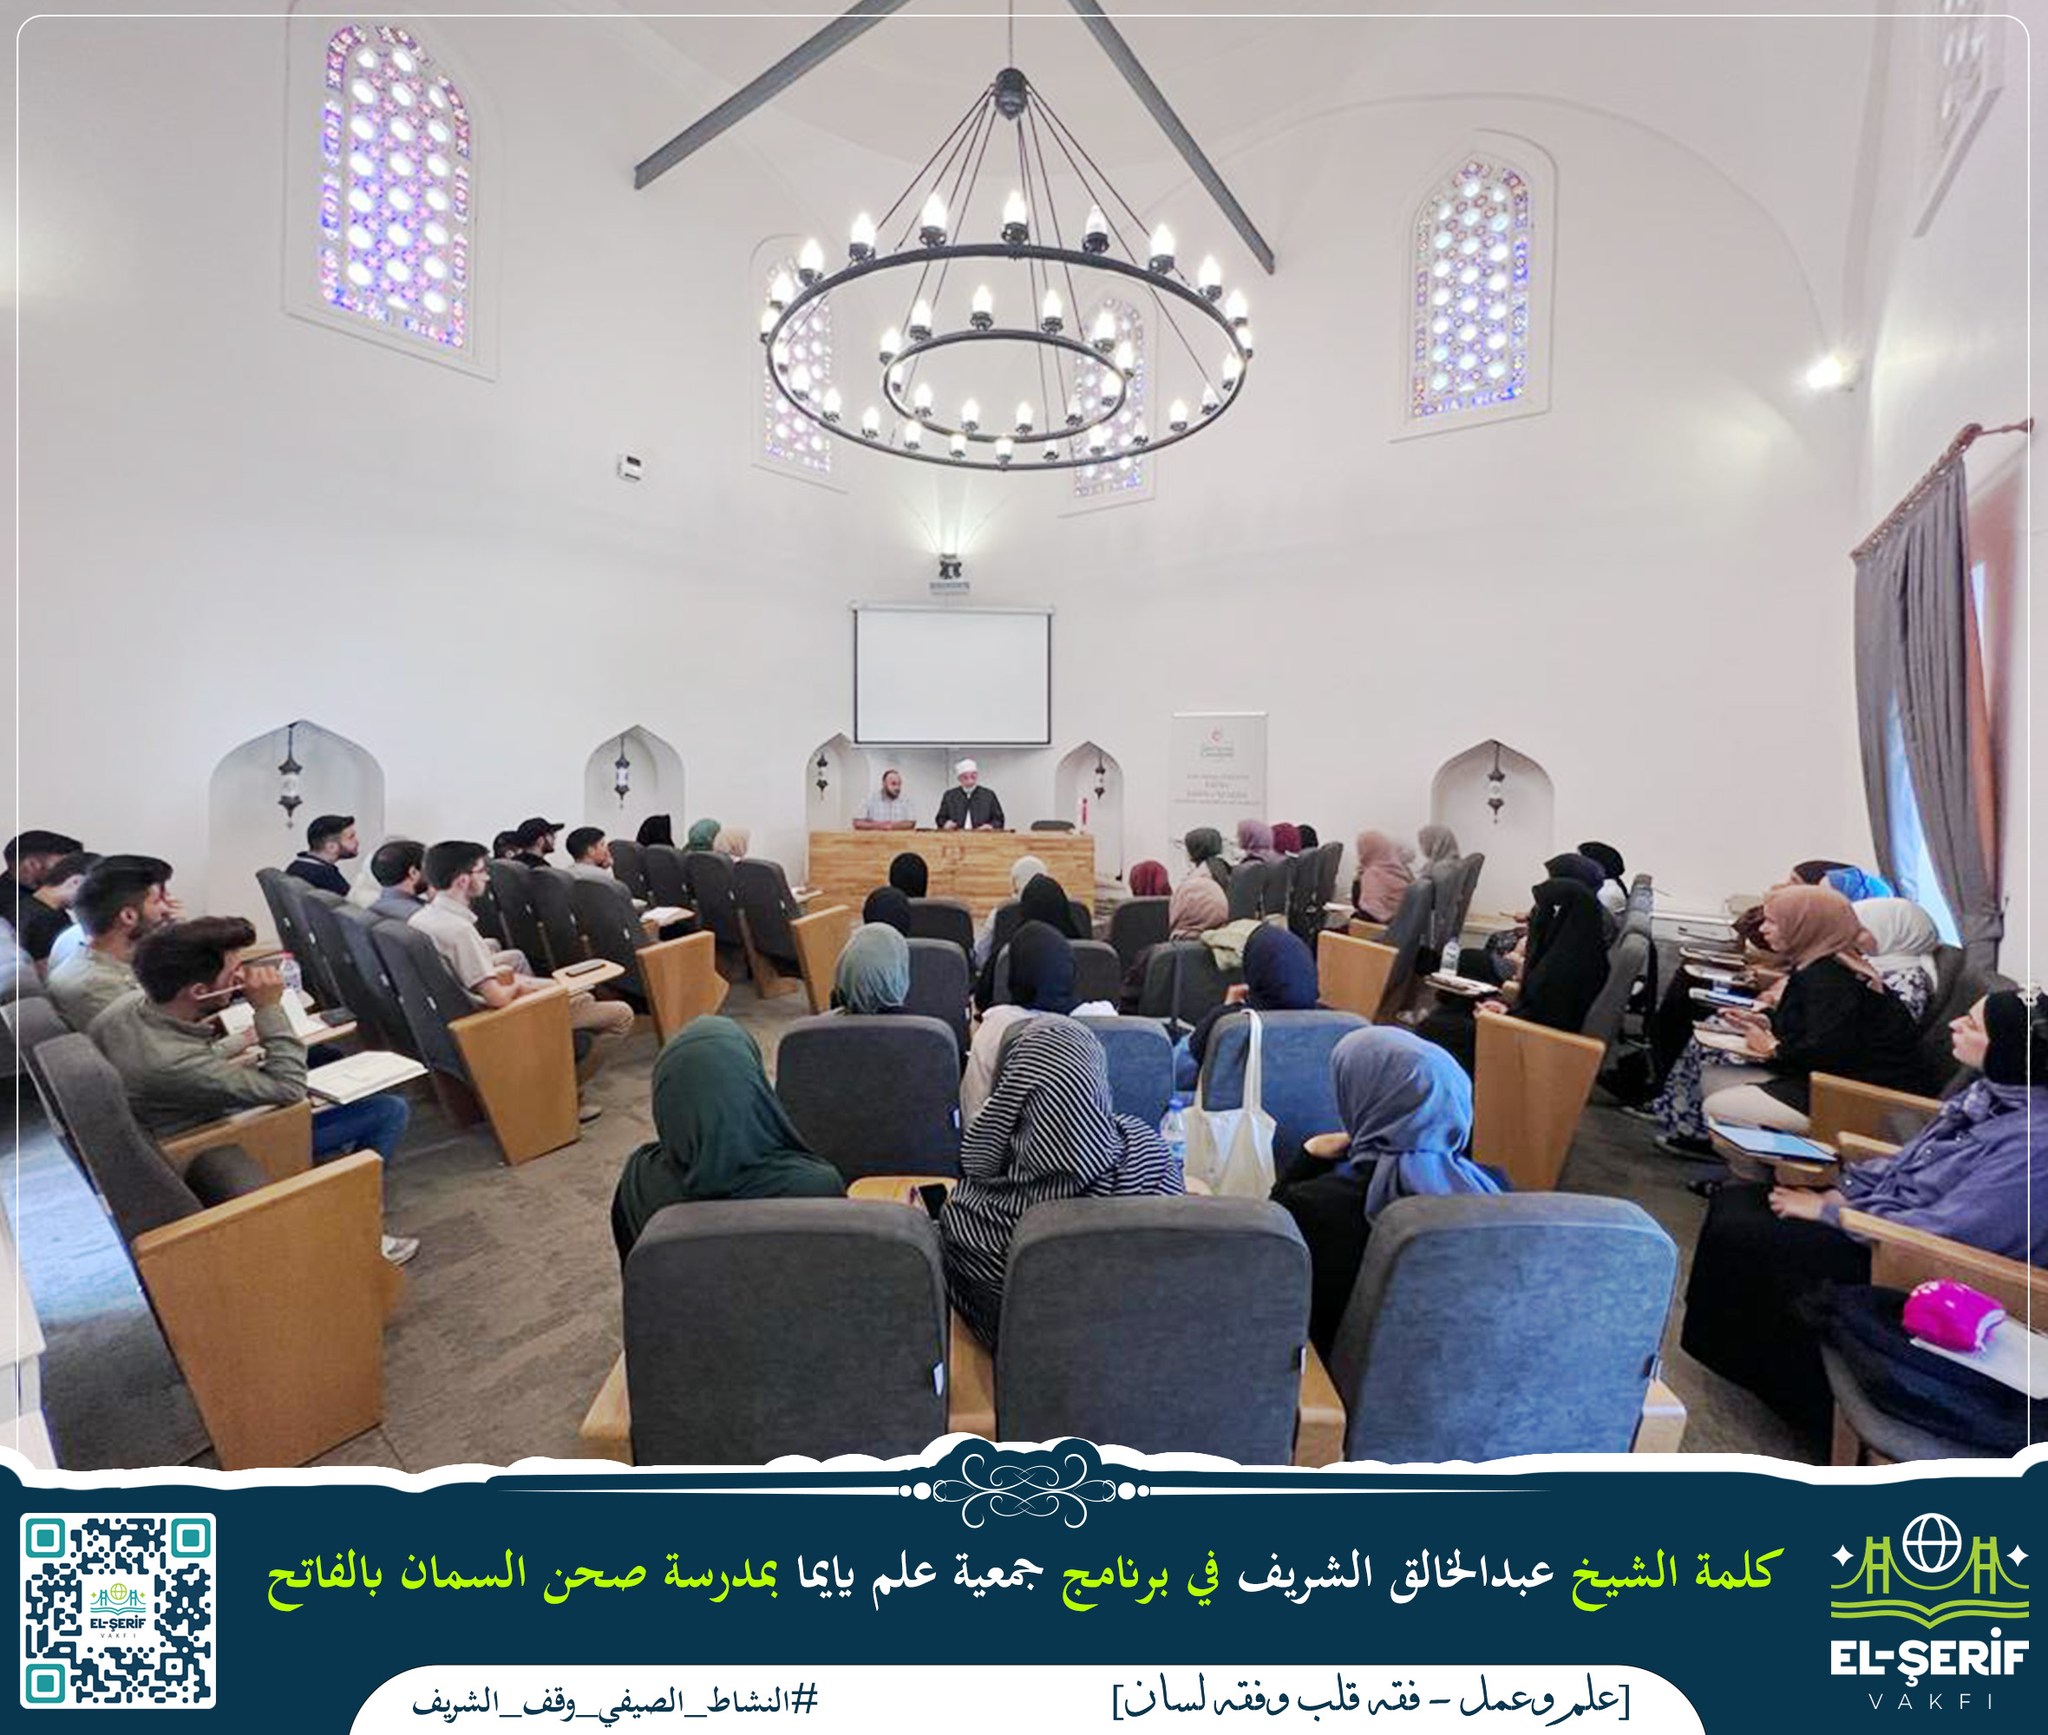 البرنامج المُميّز الذي تقيمه جمعية علم يايما بمشاركة فضيلة الشيخ عبد الخالق الشريف